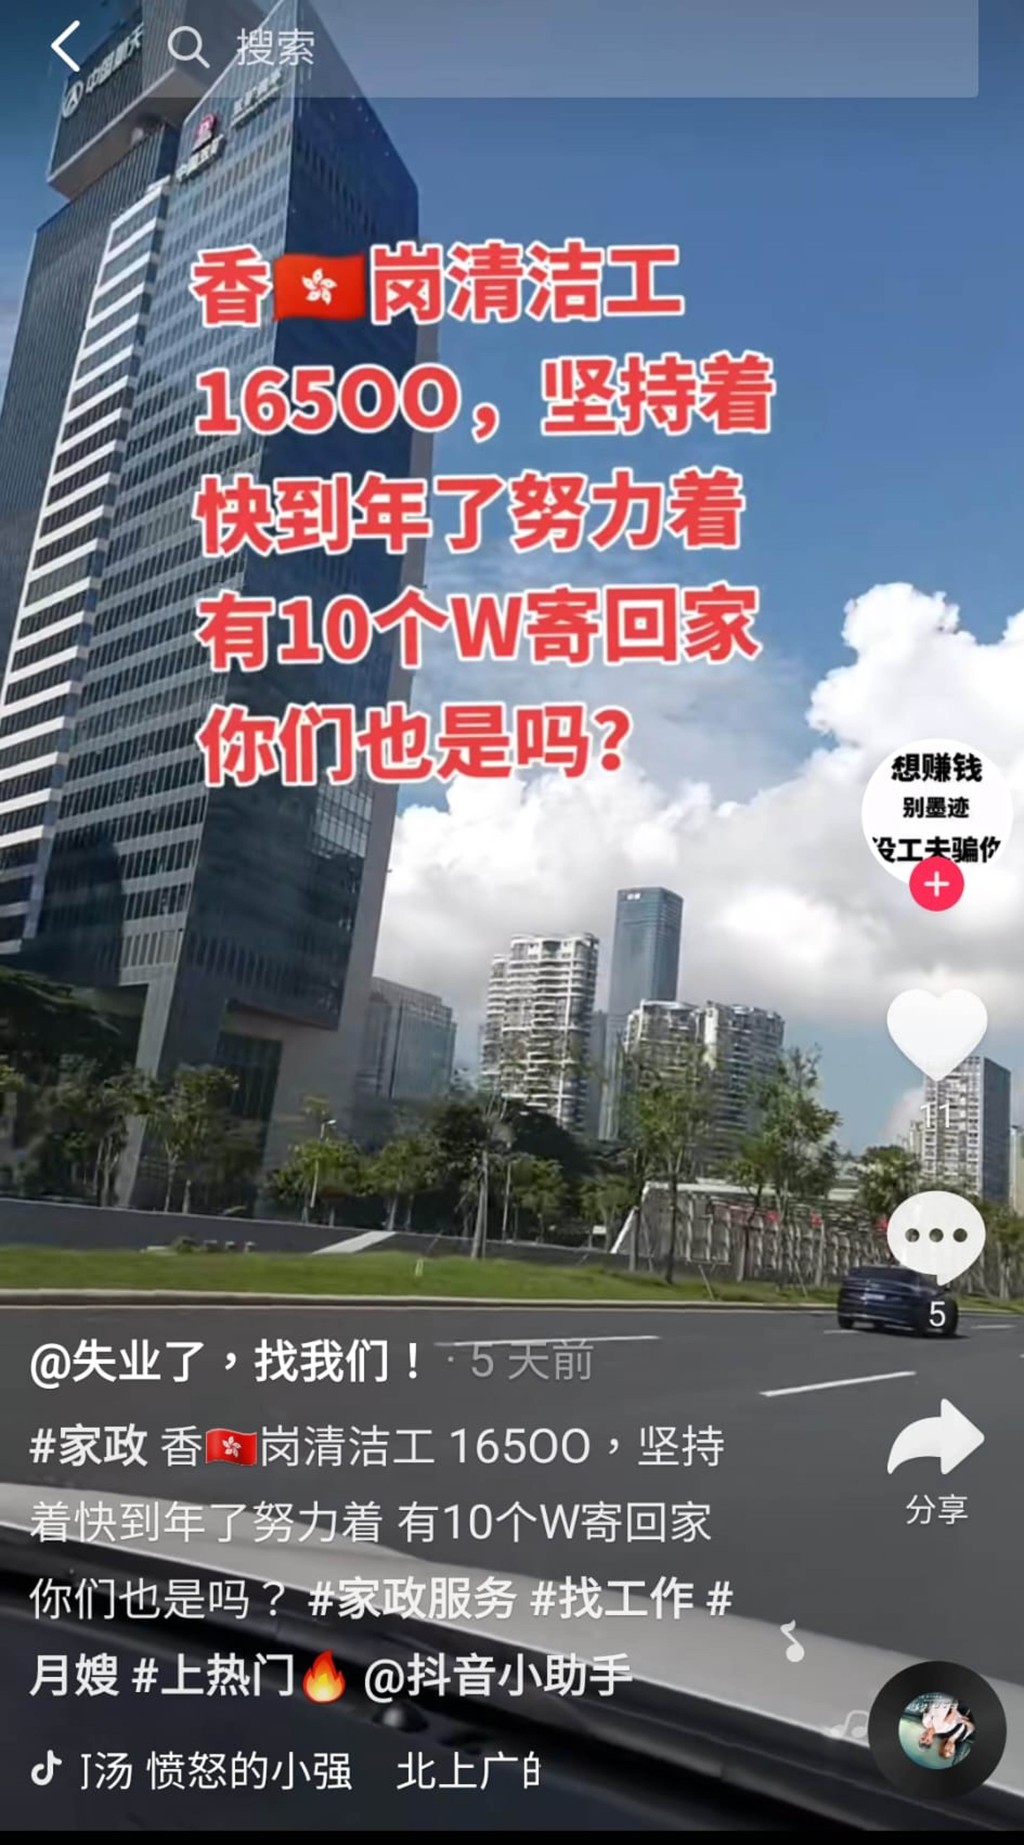 中介在「抖音」宣傳，稱可介紹內地人前往香港當清潔工人。